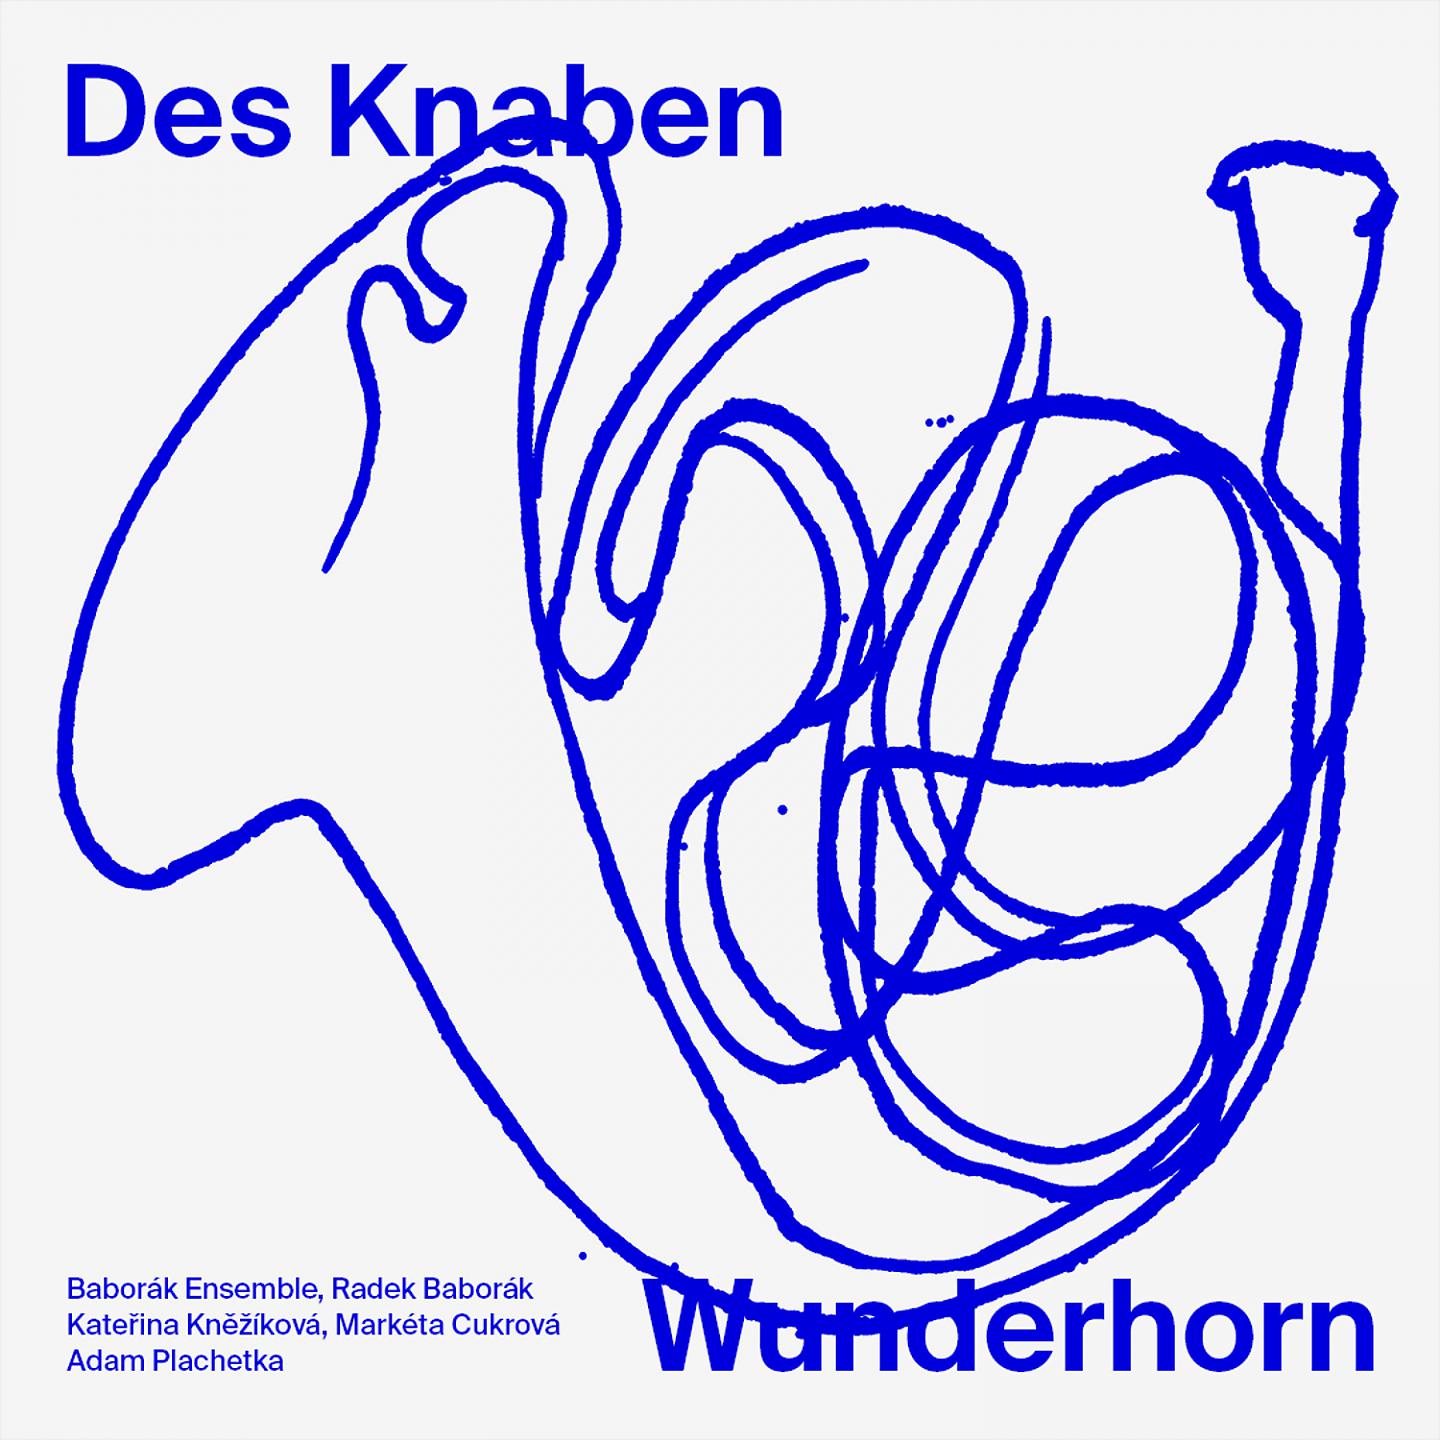 Постер альбома Mahler: Des Knaben Wunderhorn